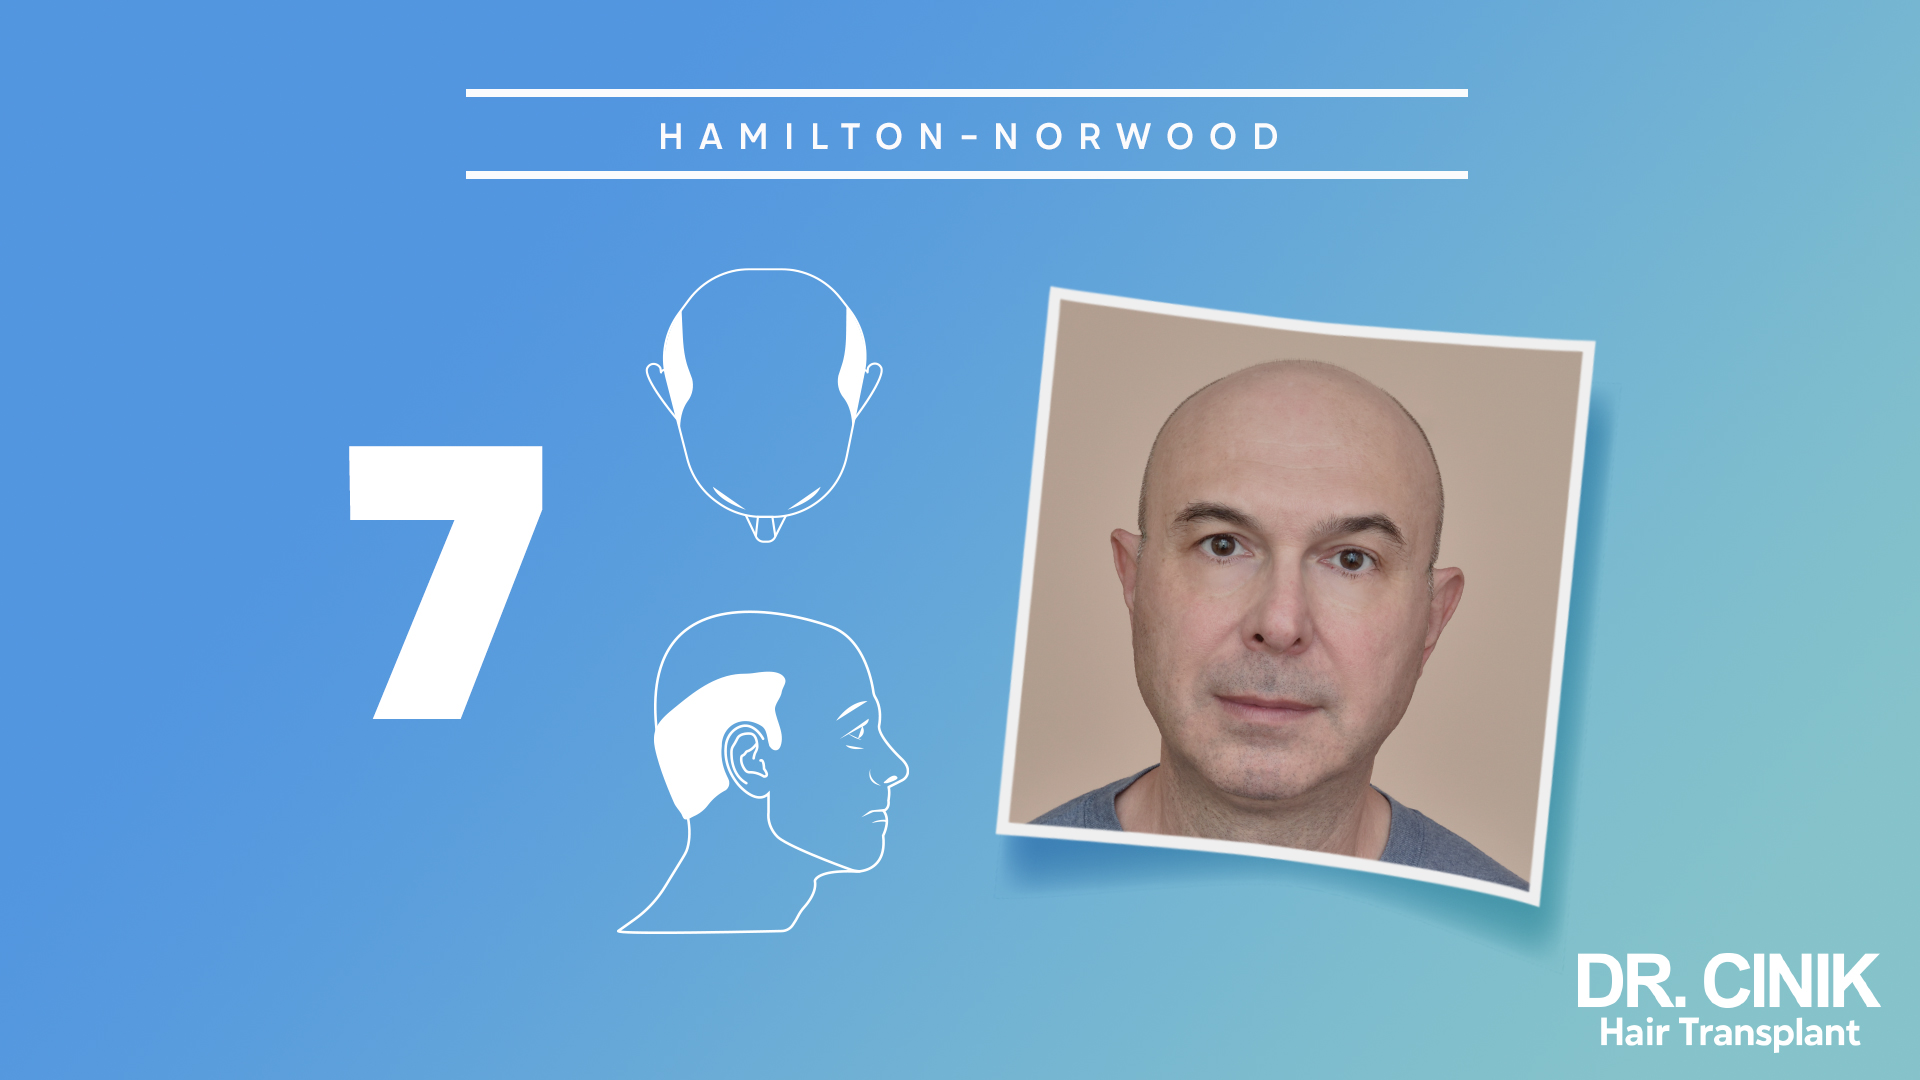 
ChatGPT
Esta imagen representa la etapa 7 de la escala "HAMILTON-NORWOOD", que clasifica los niveles de alopecia en hombres. Se observa un diagrama de un perfil masculino mostrando una avanzada pérdida de cabello en la parte superior de la cabeza. Junto al diagrama, hay una fotografía de un hombre real que ejemplifica esta etapa de alopecia.